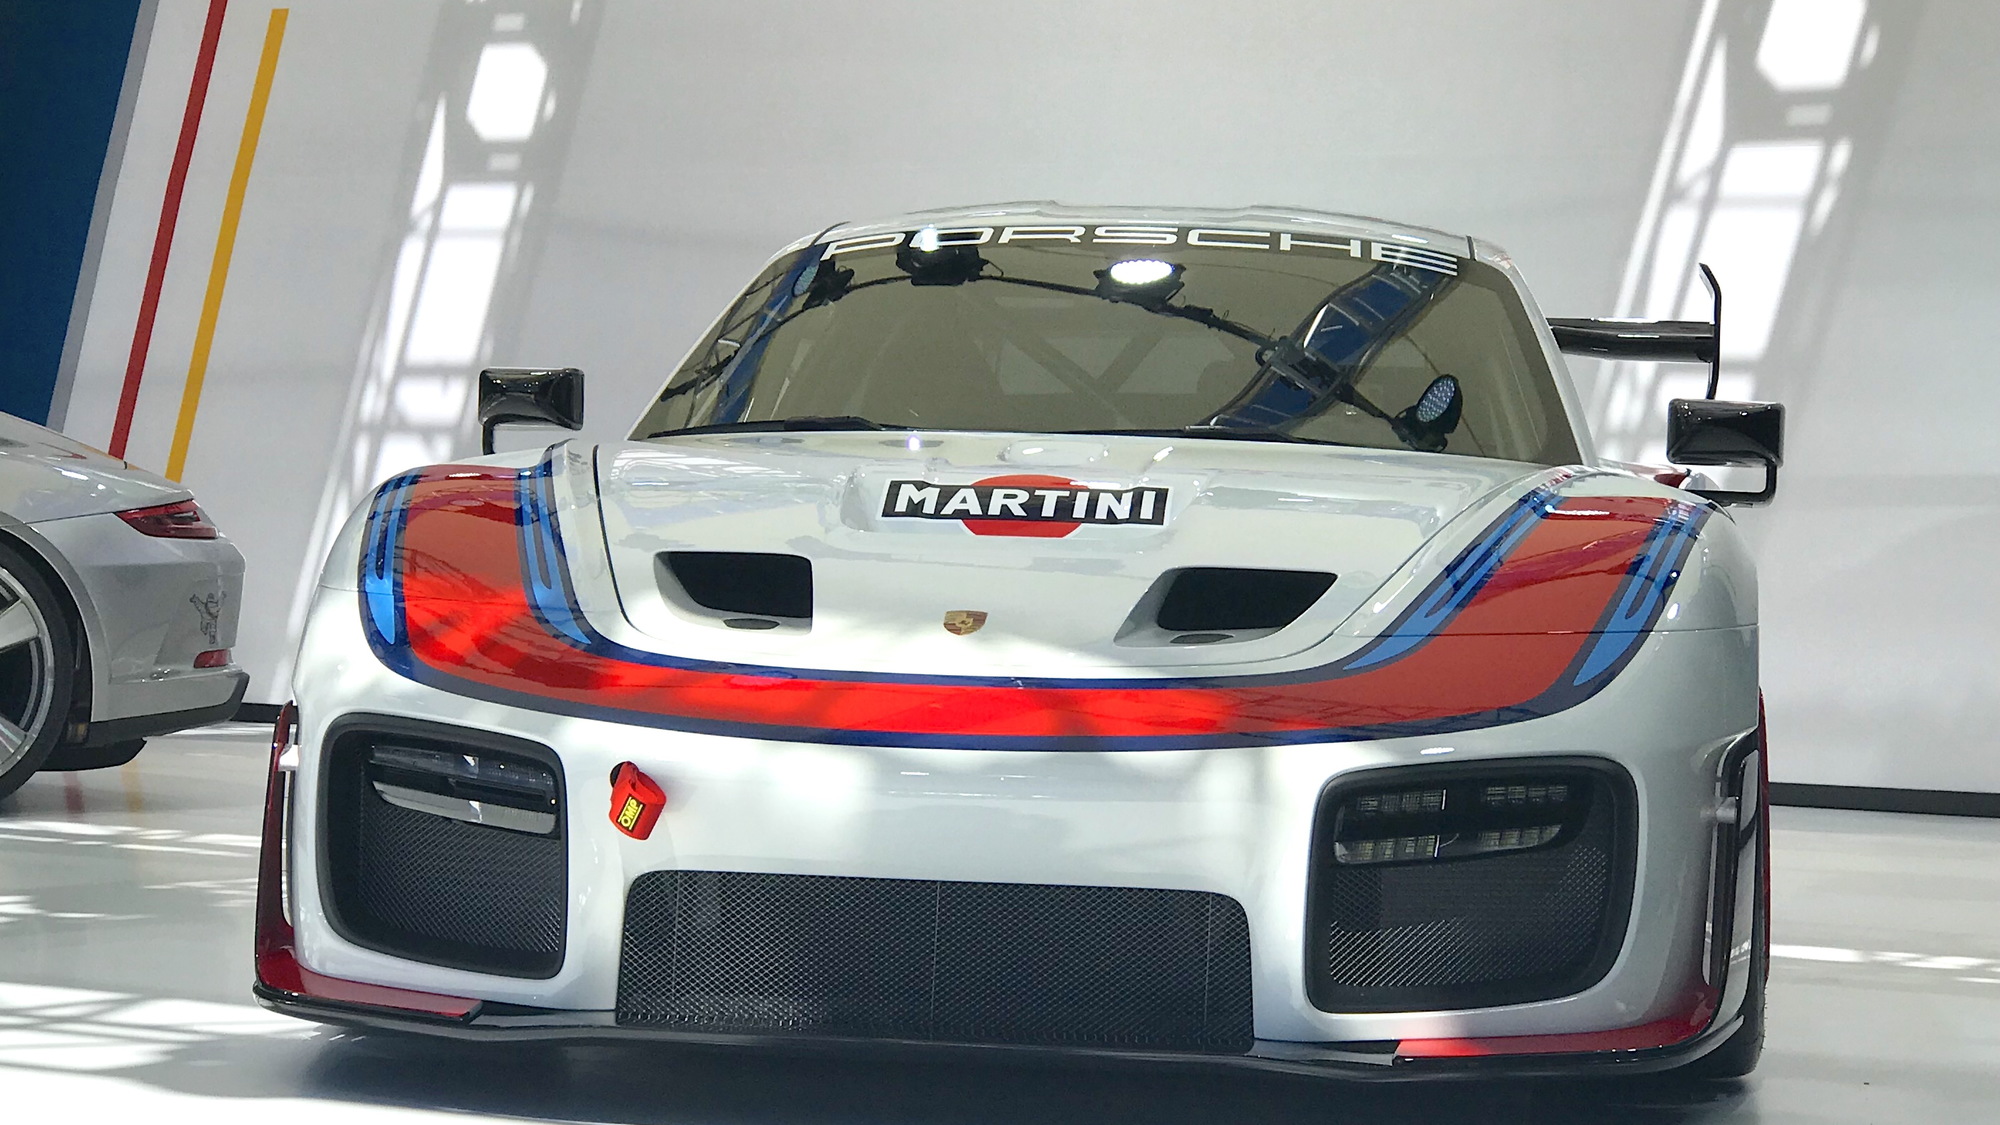 Porsche 935 customer race car, 2018 Rennsport Reunion